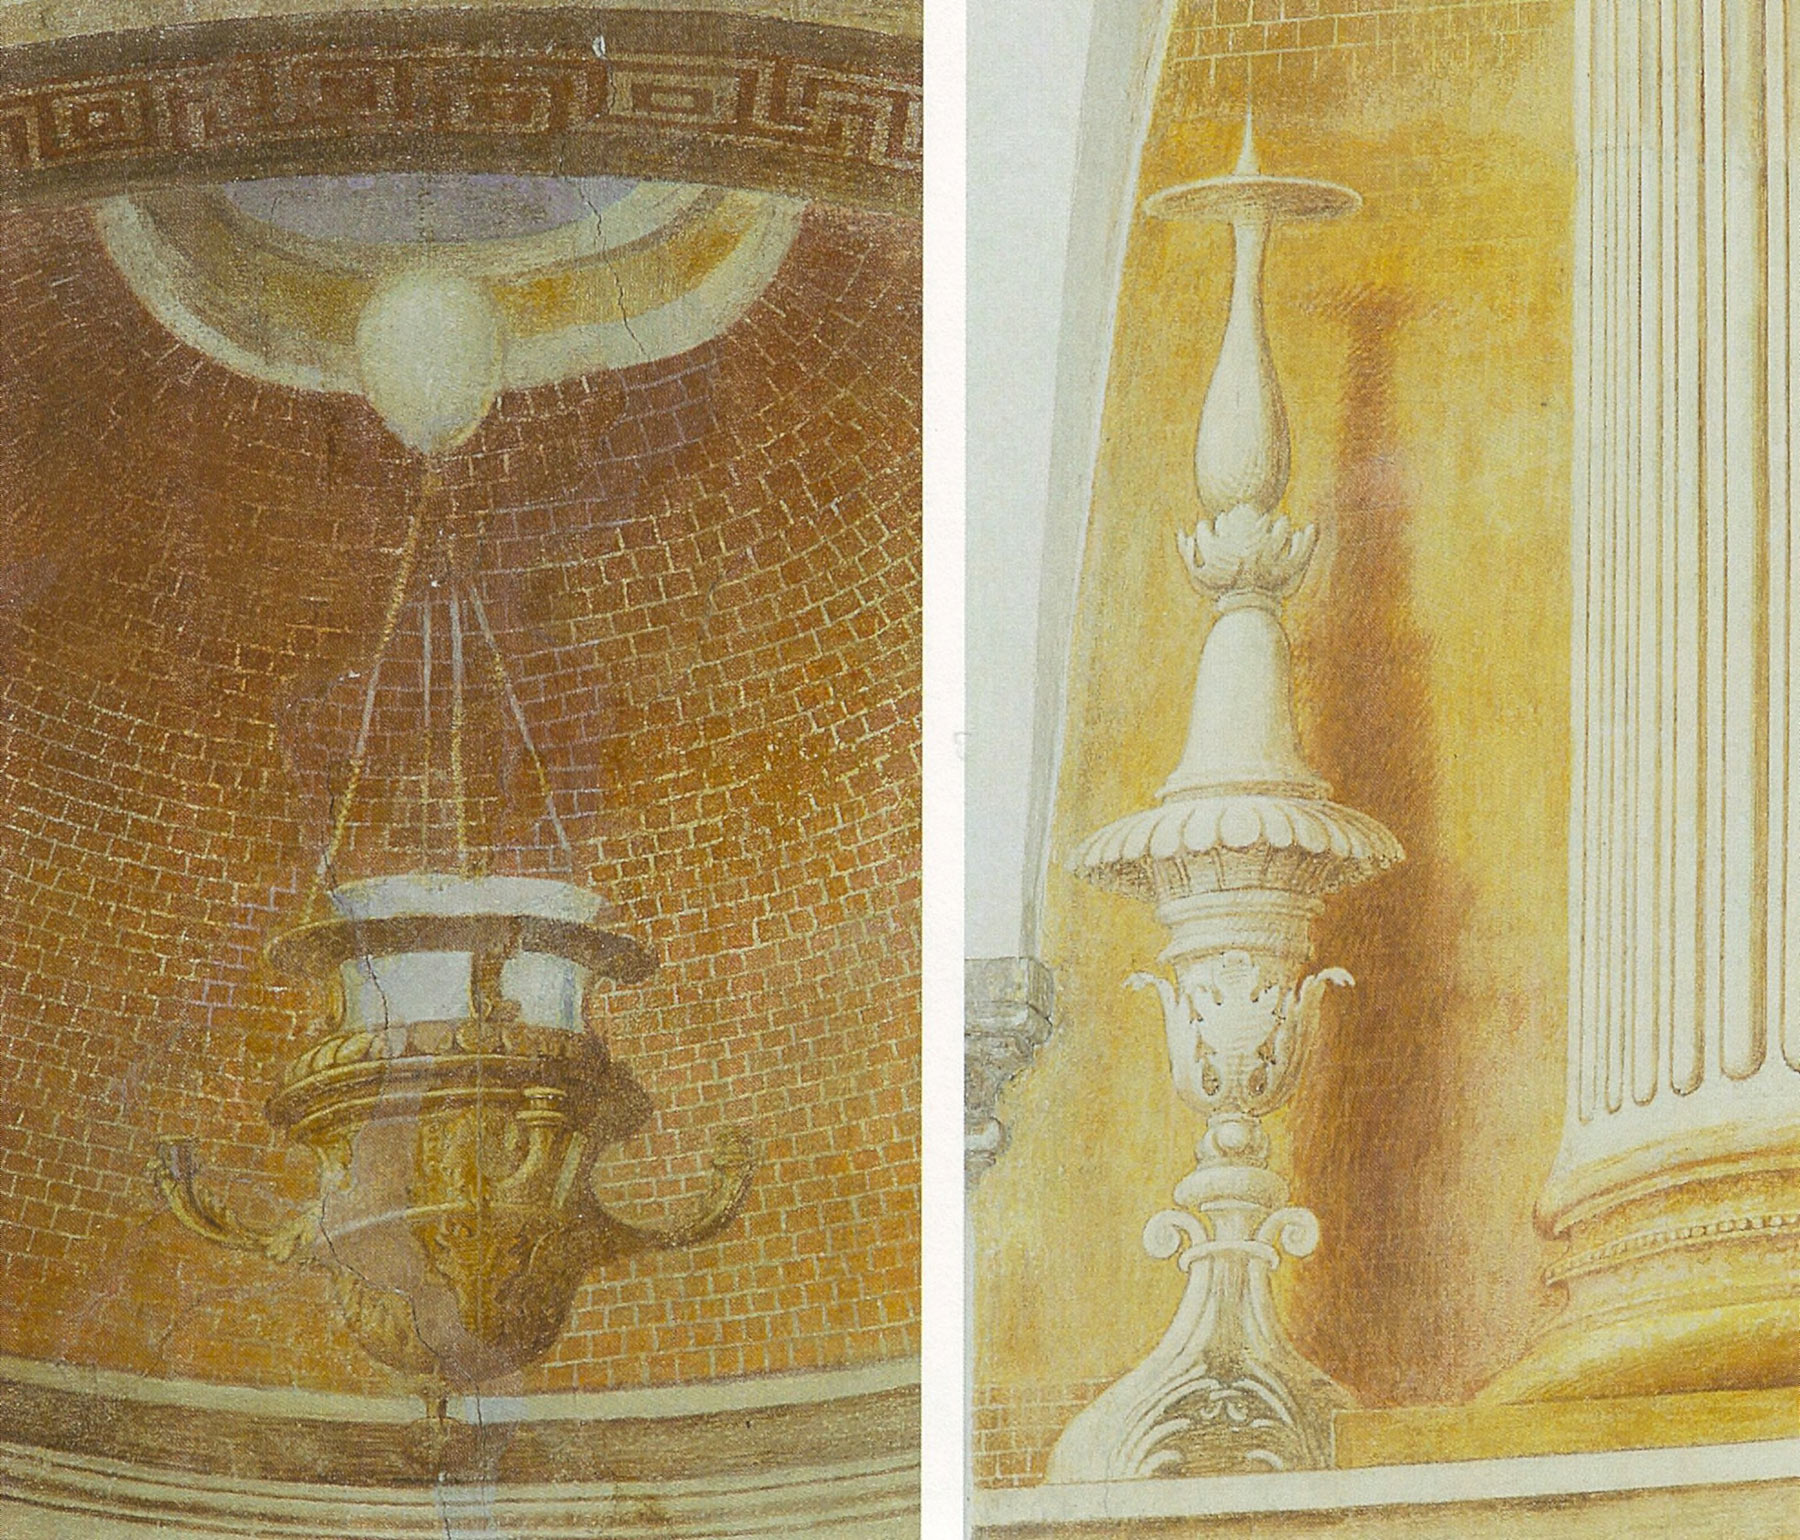 La lampada, che scende direttamente dal cielo. L'elegantissimo candeliere, memore dello stilismo del Perugino. Ambedue queste presenze riportano la raffinata cultura orafa di Antonio Allegri.
